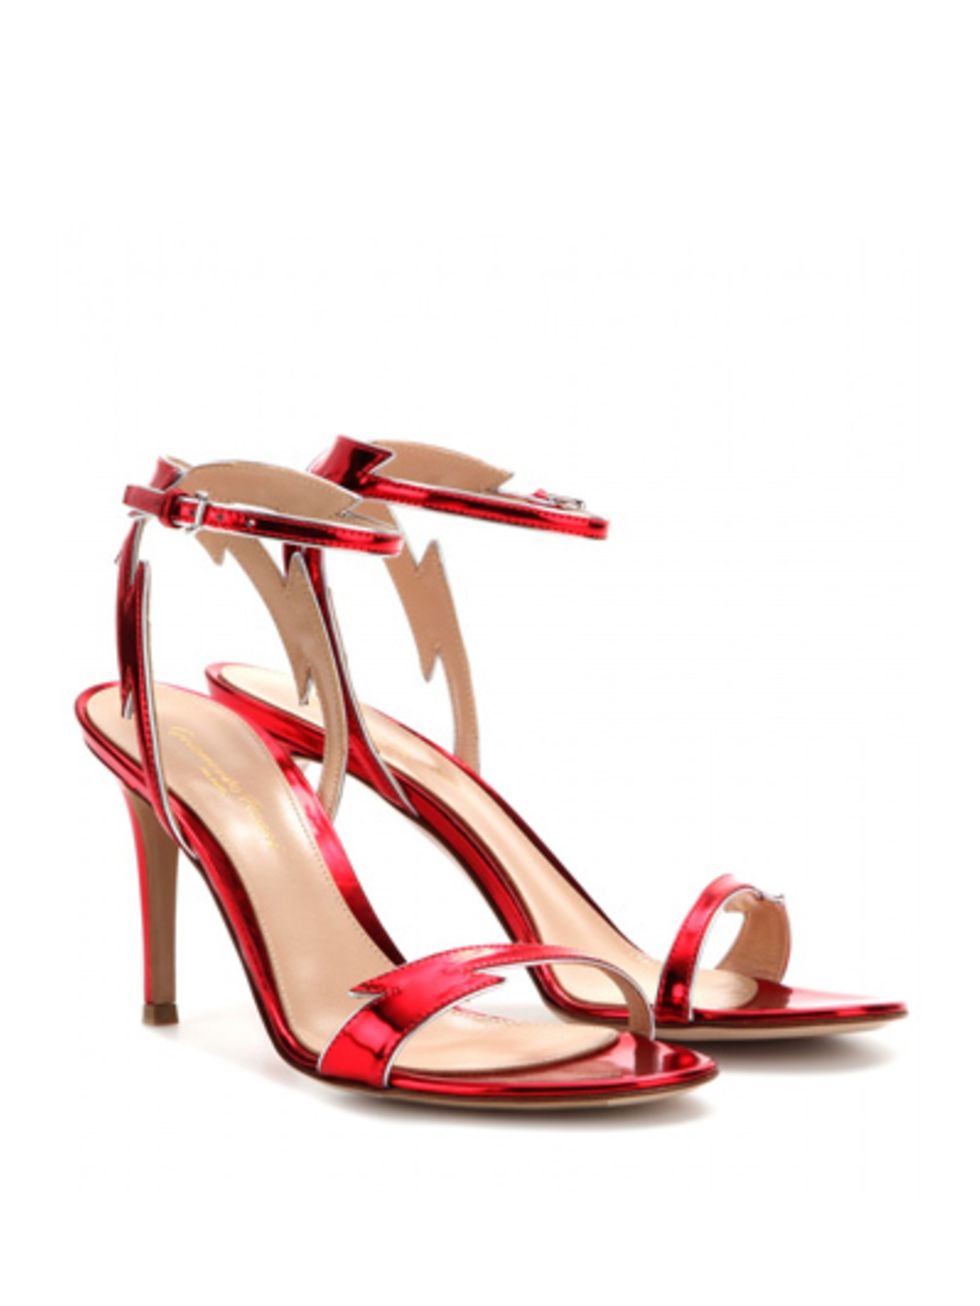 Red, Sandal, High heels, Carmine, Eye glass accessory, Basic pump, Tan, Beige, Maroon, Slingback, 